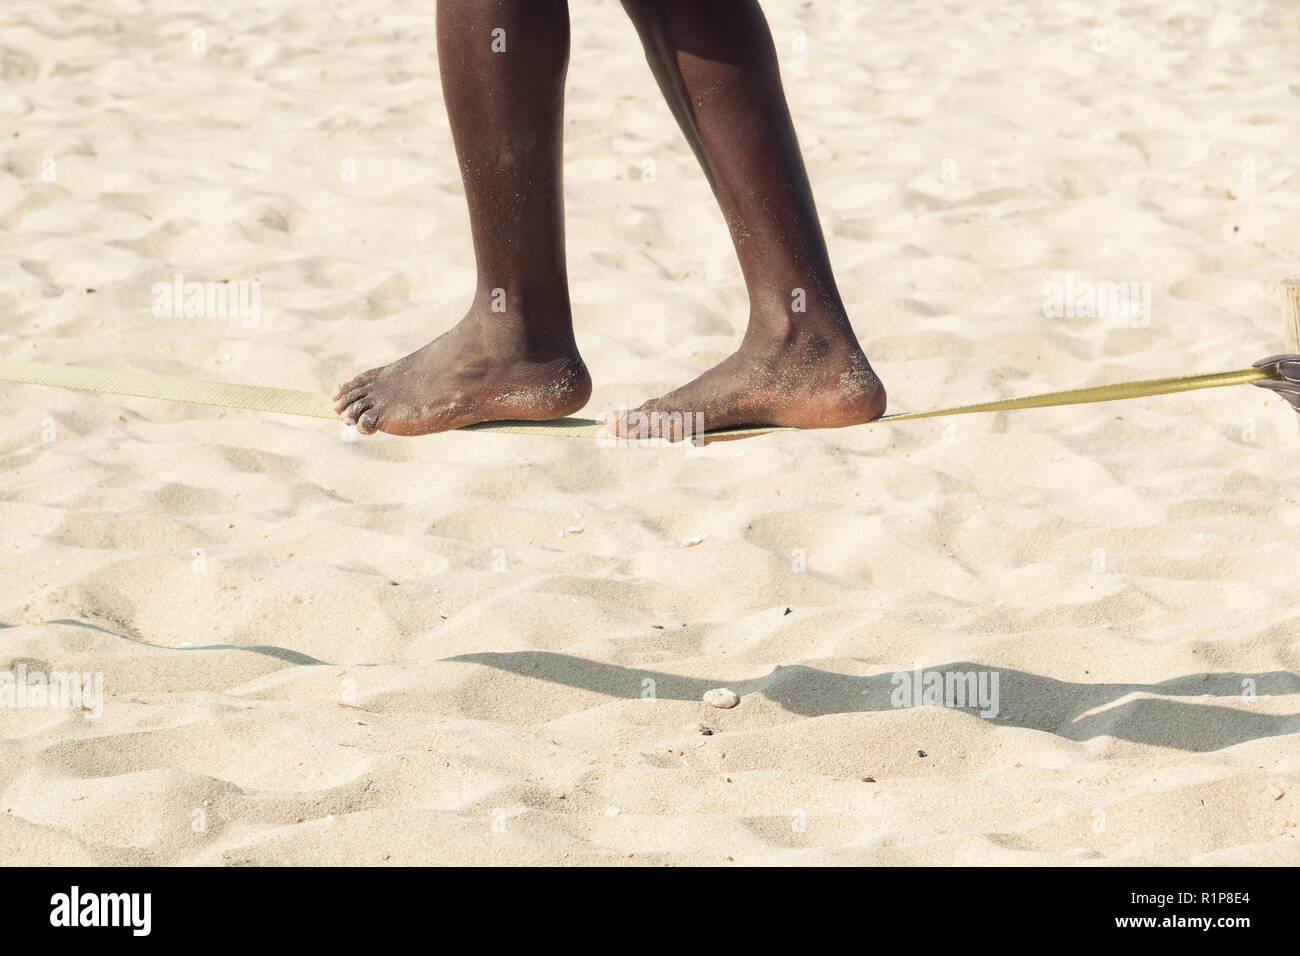 Chico afro-americanos practicar slack line en la playa. Slacklining es una práctica de equilibrio que utiliza normalmente la cincha poliéster o nylon ser tensada Foto de stock